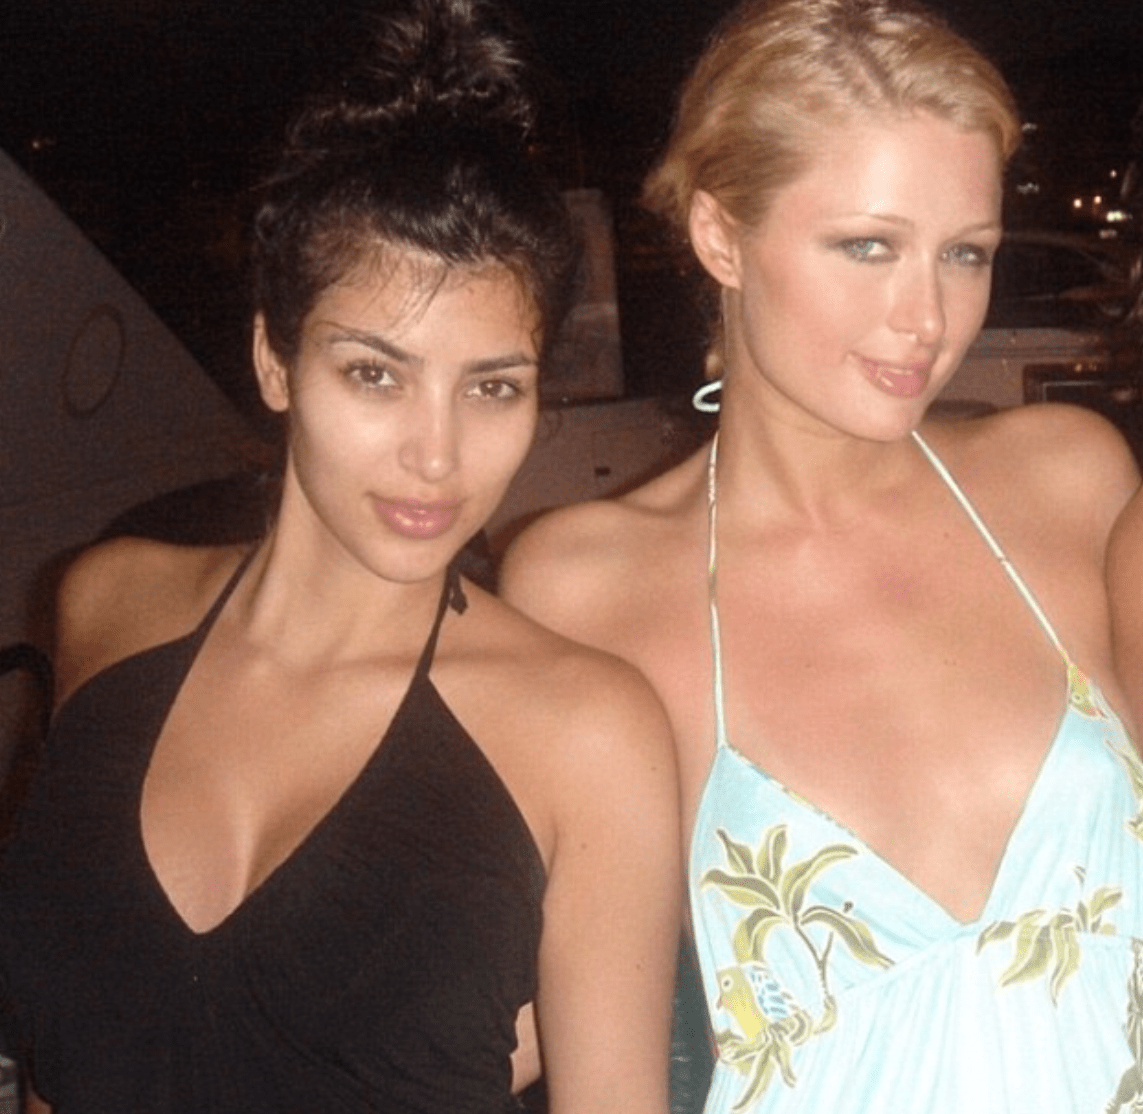 Paris Hilton Porn Xxx - Kim Kardashian Was With Former BFF Paris Hilton When Sex Tape Leaked!